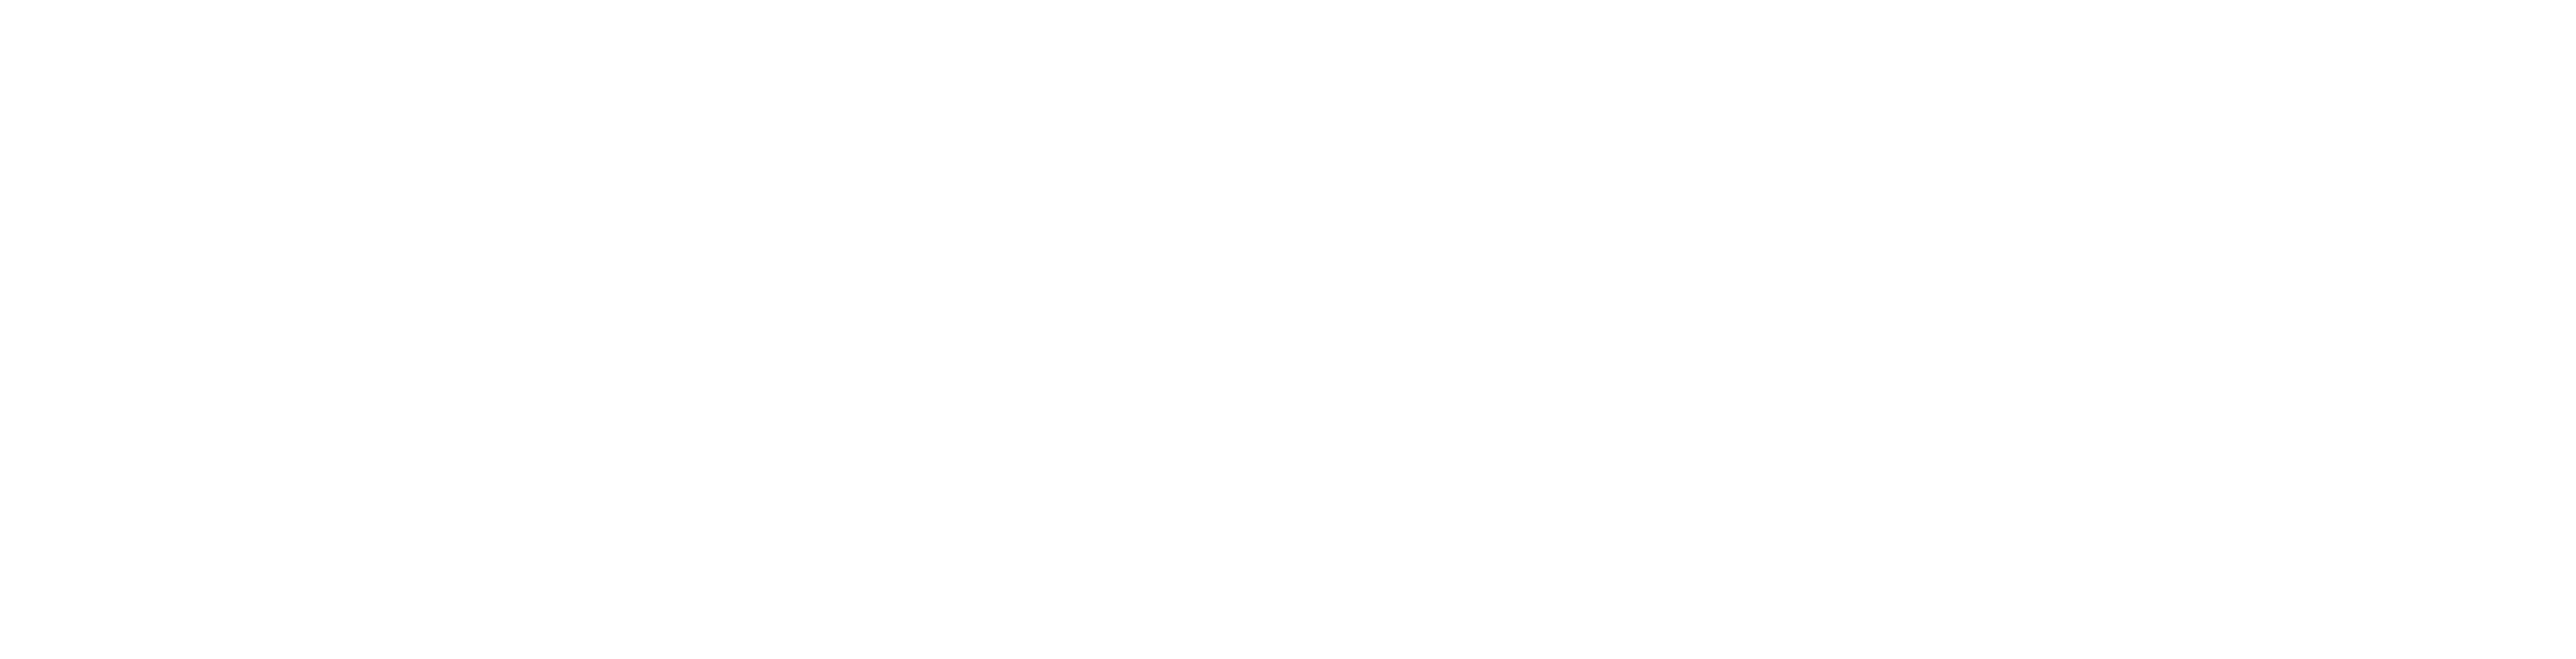 Stadt Kronberg Logo